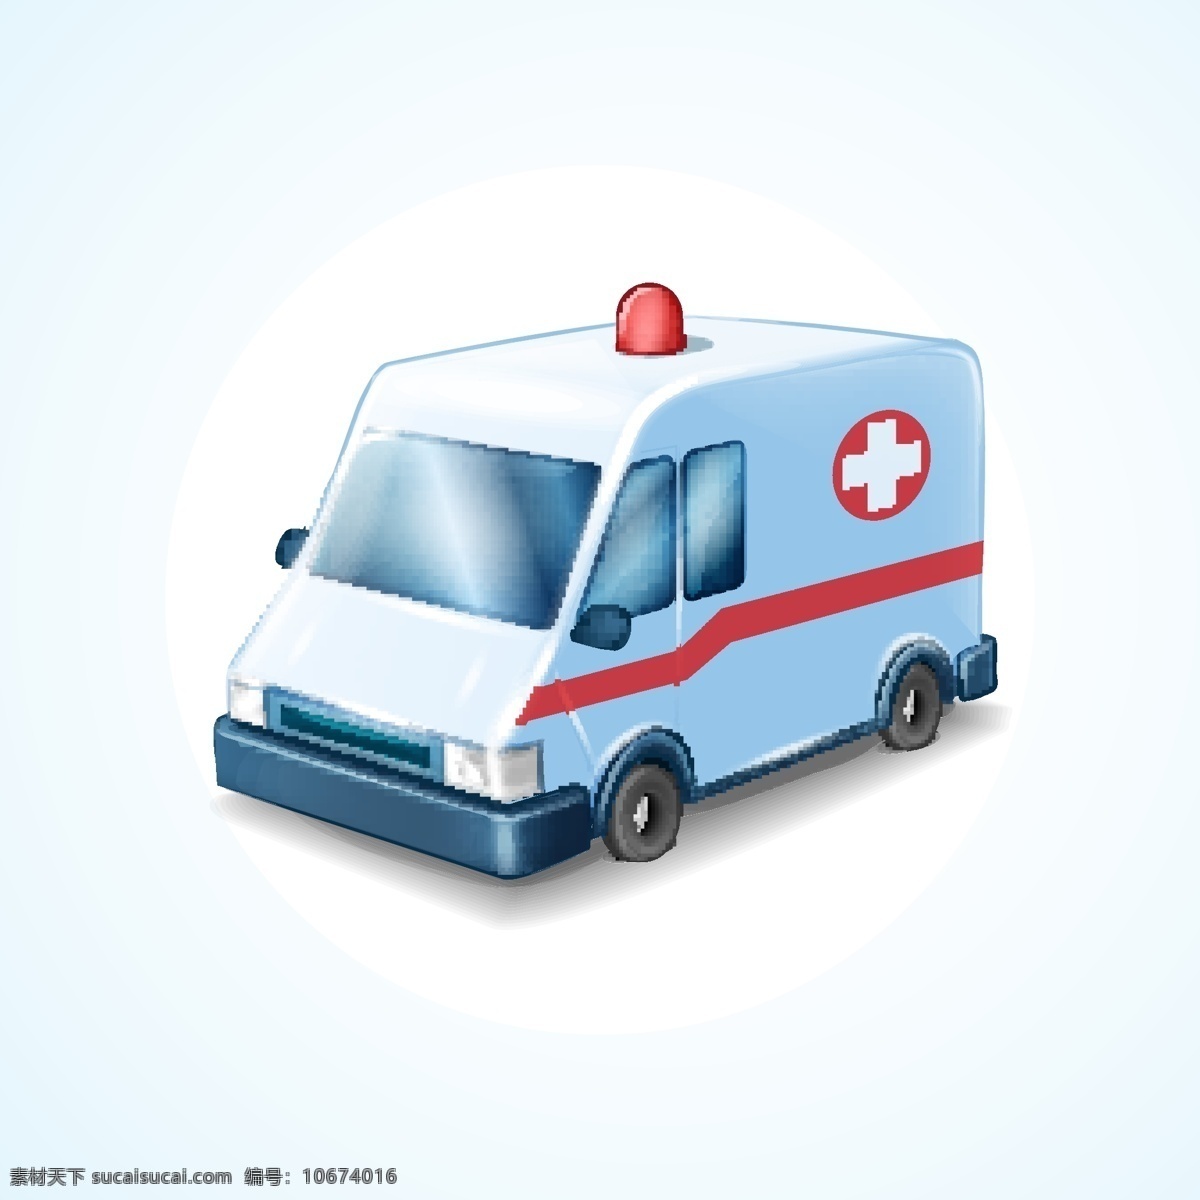 救护车 医院 面包车 专业车辆 交通工具